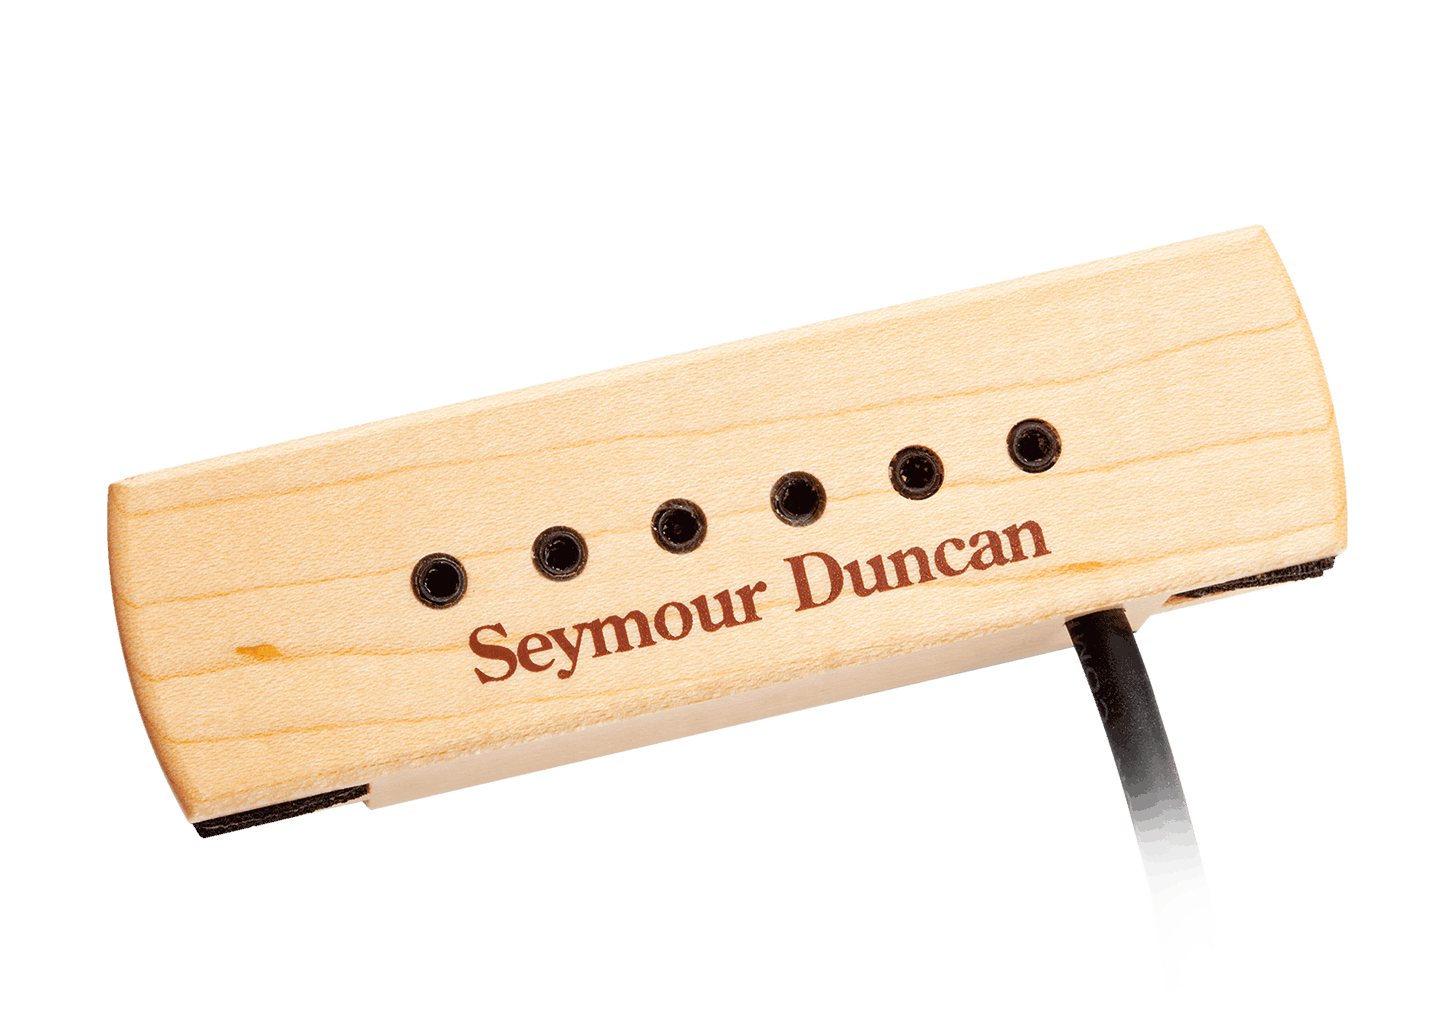 Seymour Duncan Seymour Duncan Woody | Seymour Duncan